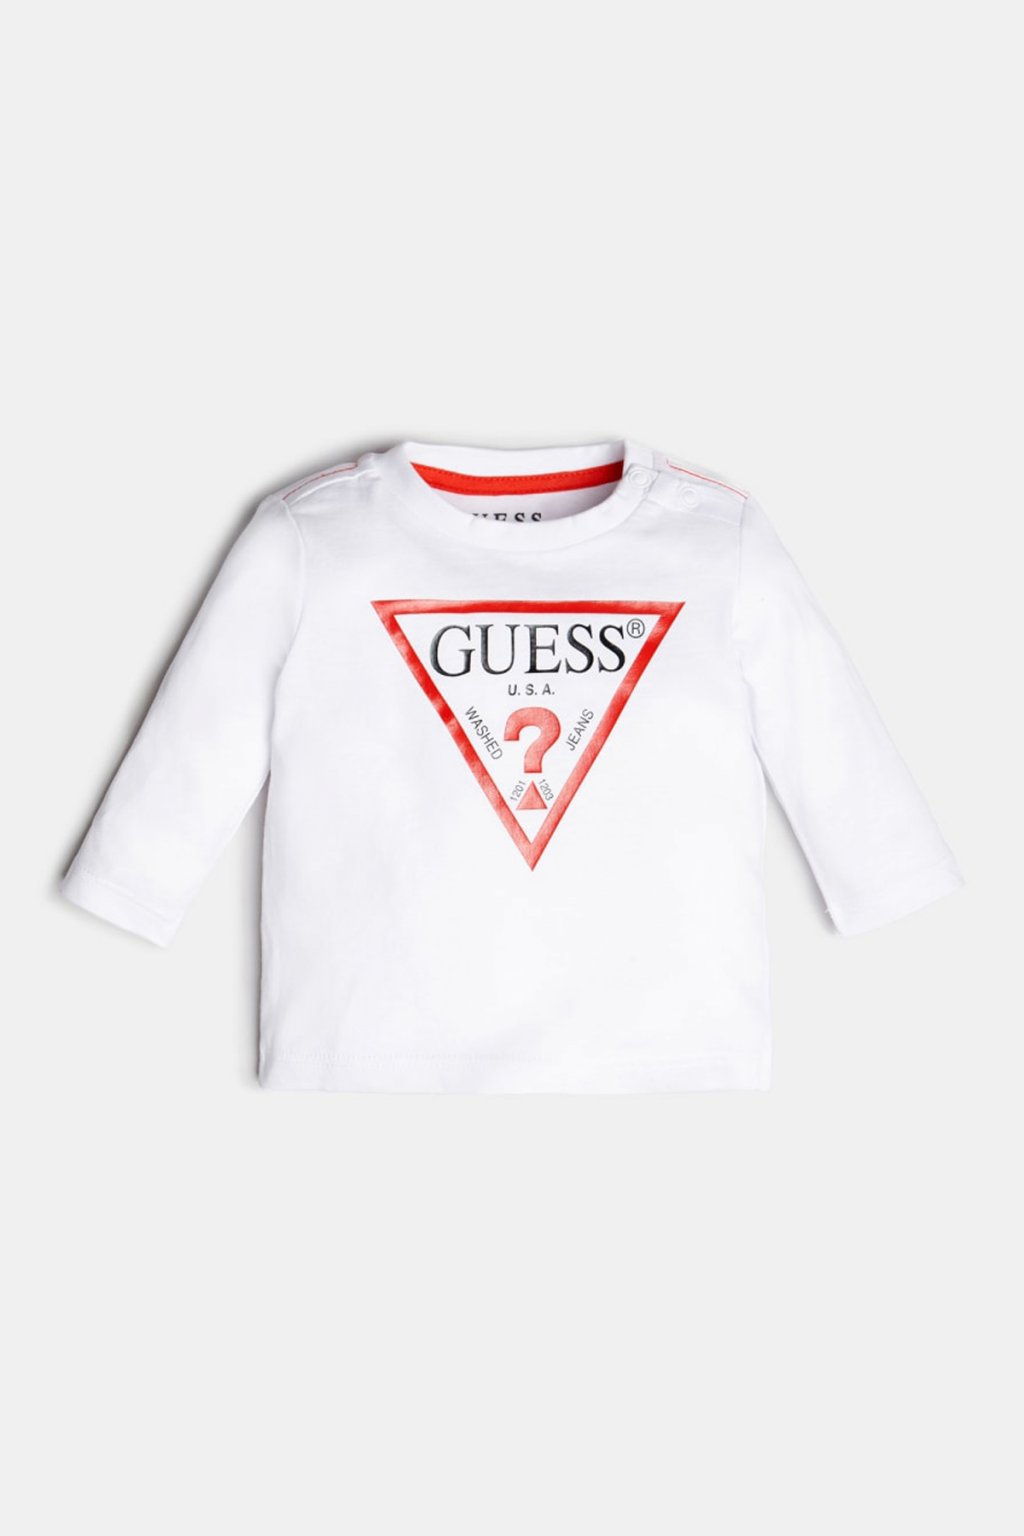 Guess - Tričko s dlouhý rukávem "CORE LINE" (Barva Bílá, Velikost 68)